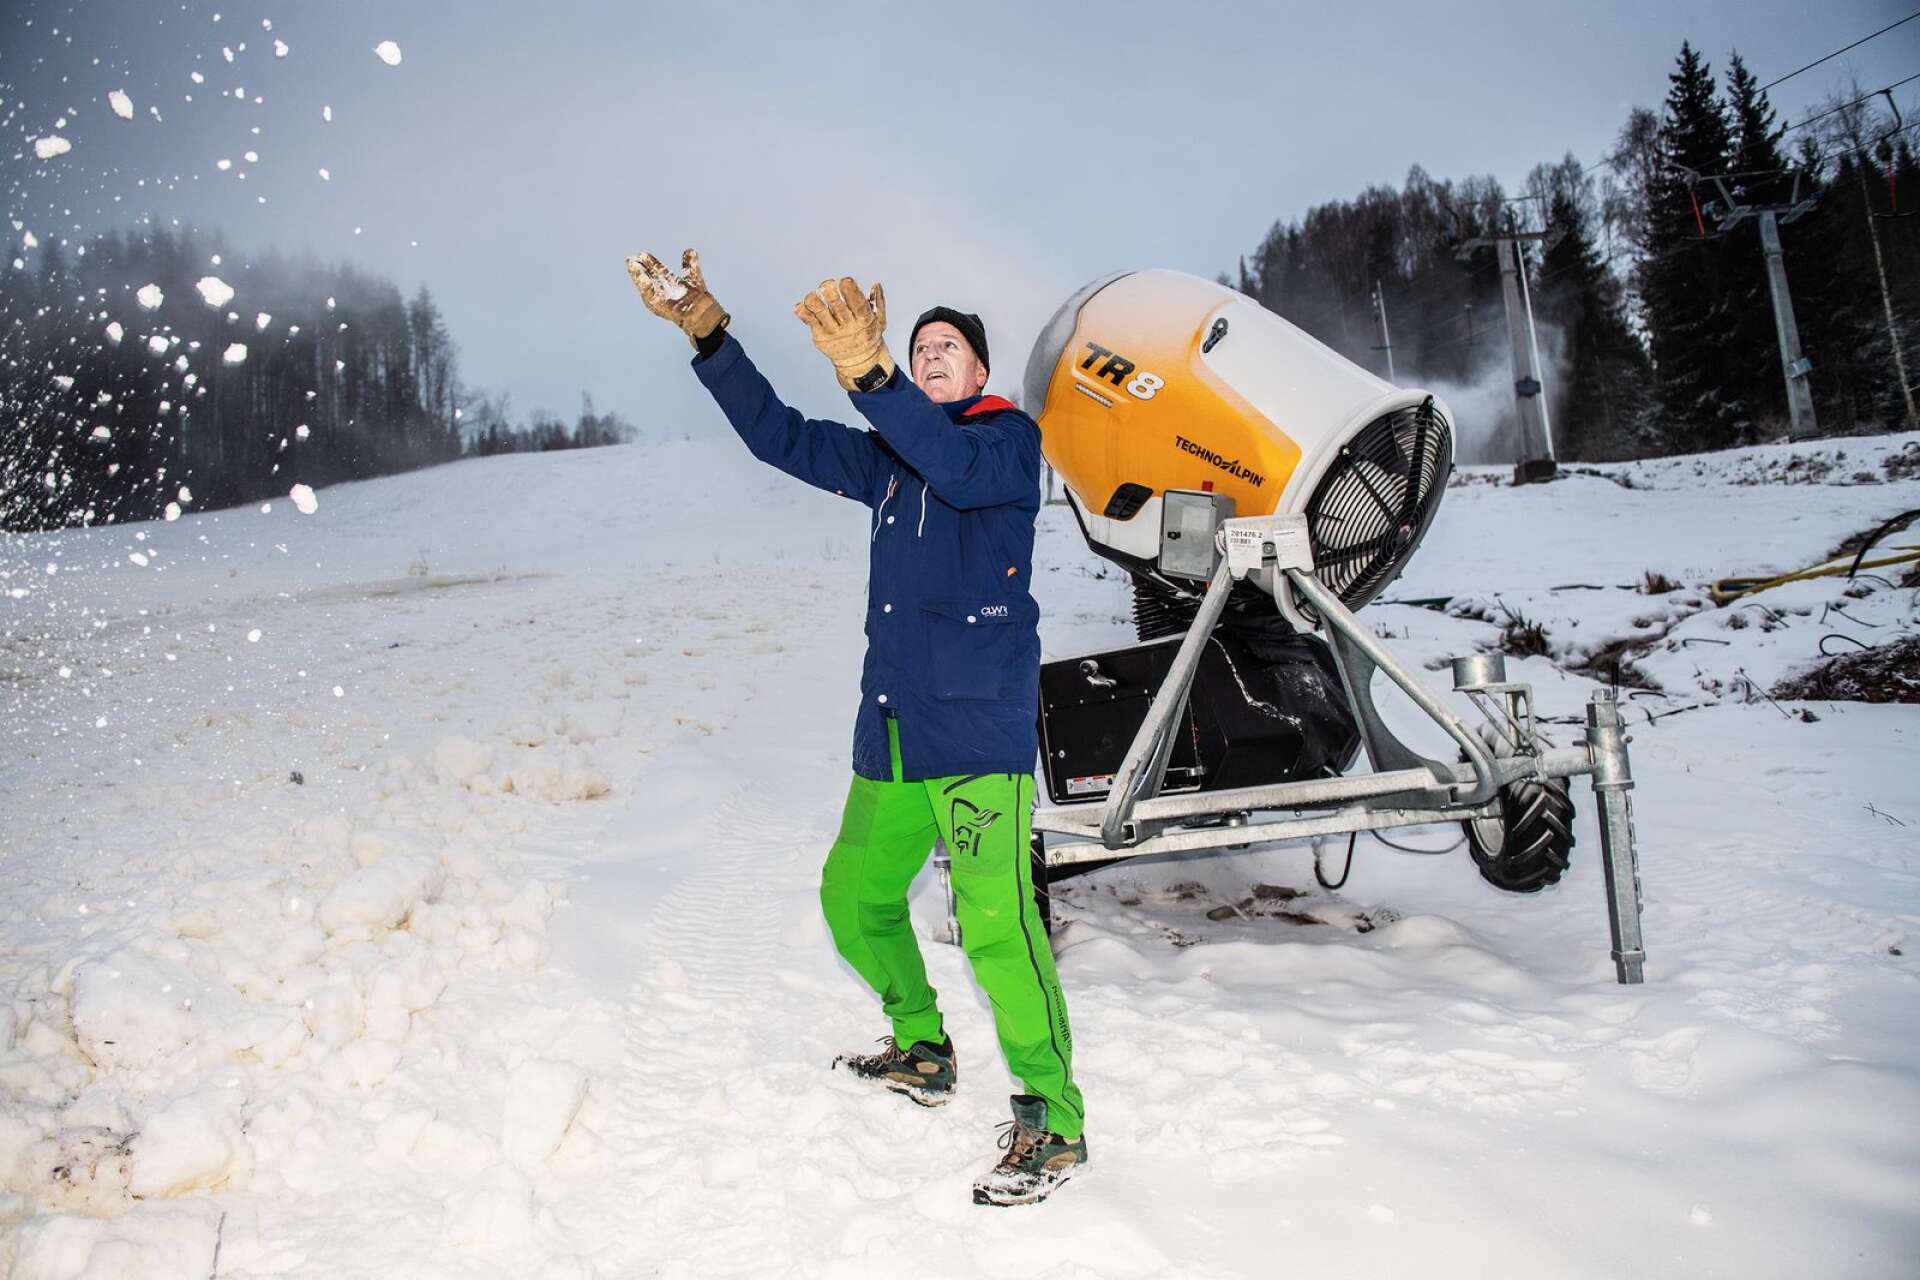 Ski Sunnes vd Curt Rudin jublar när förutsättningarna för snöproduktion är bra.